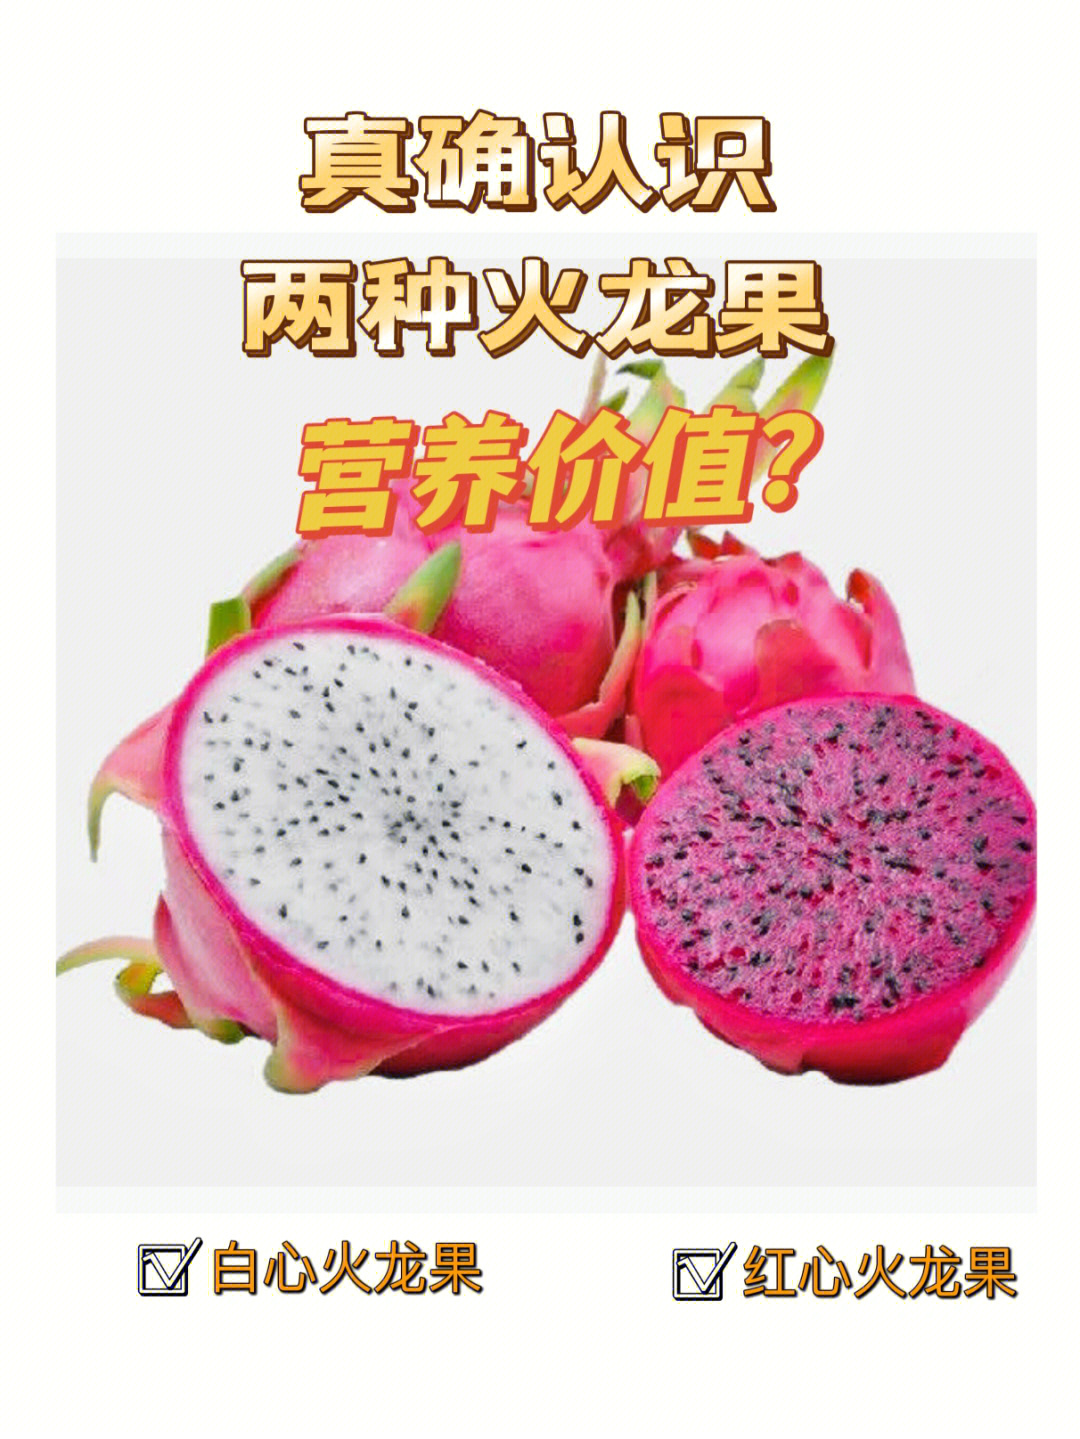 红宝龙火龙果品种介绍图片